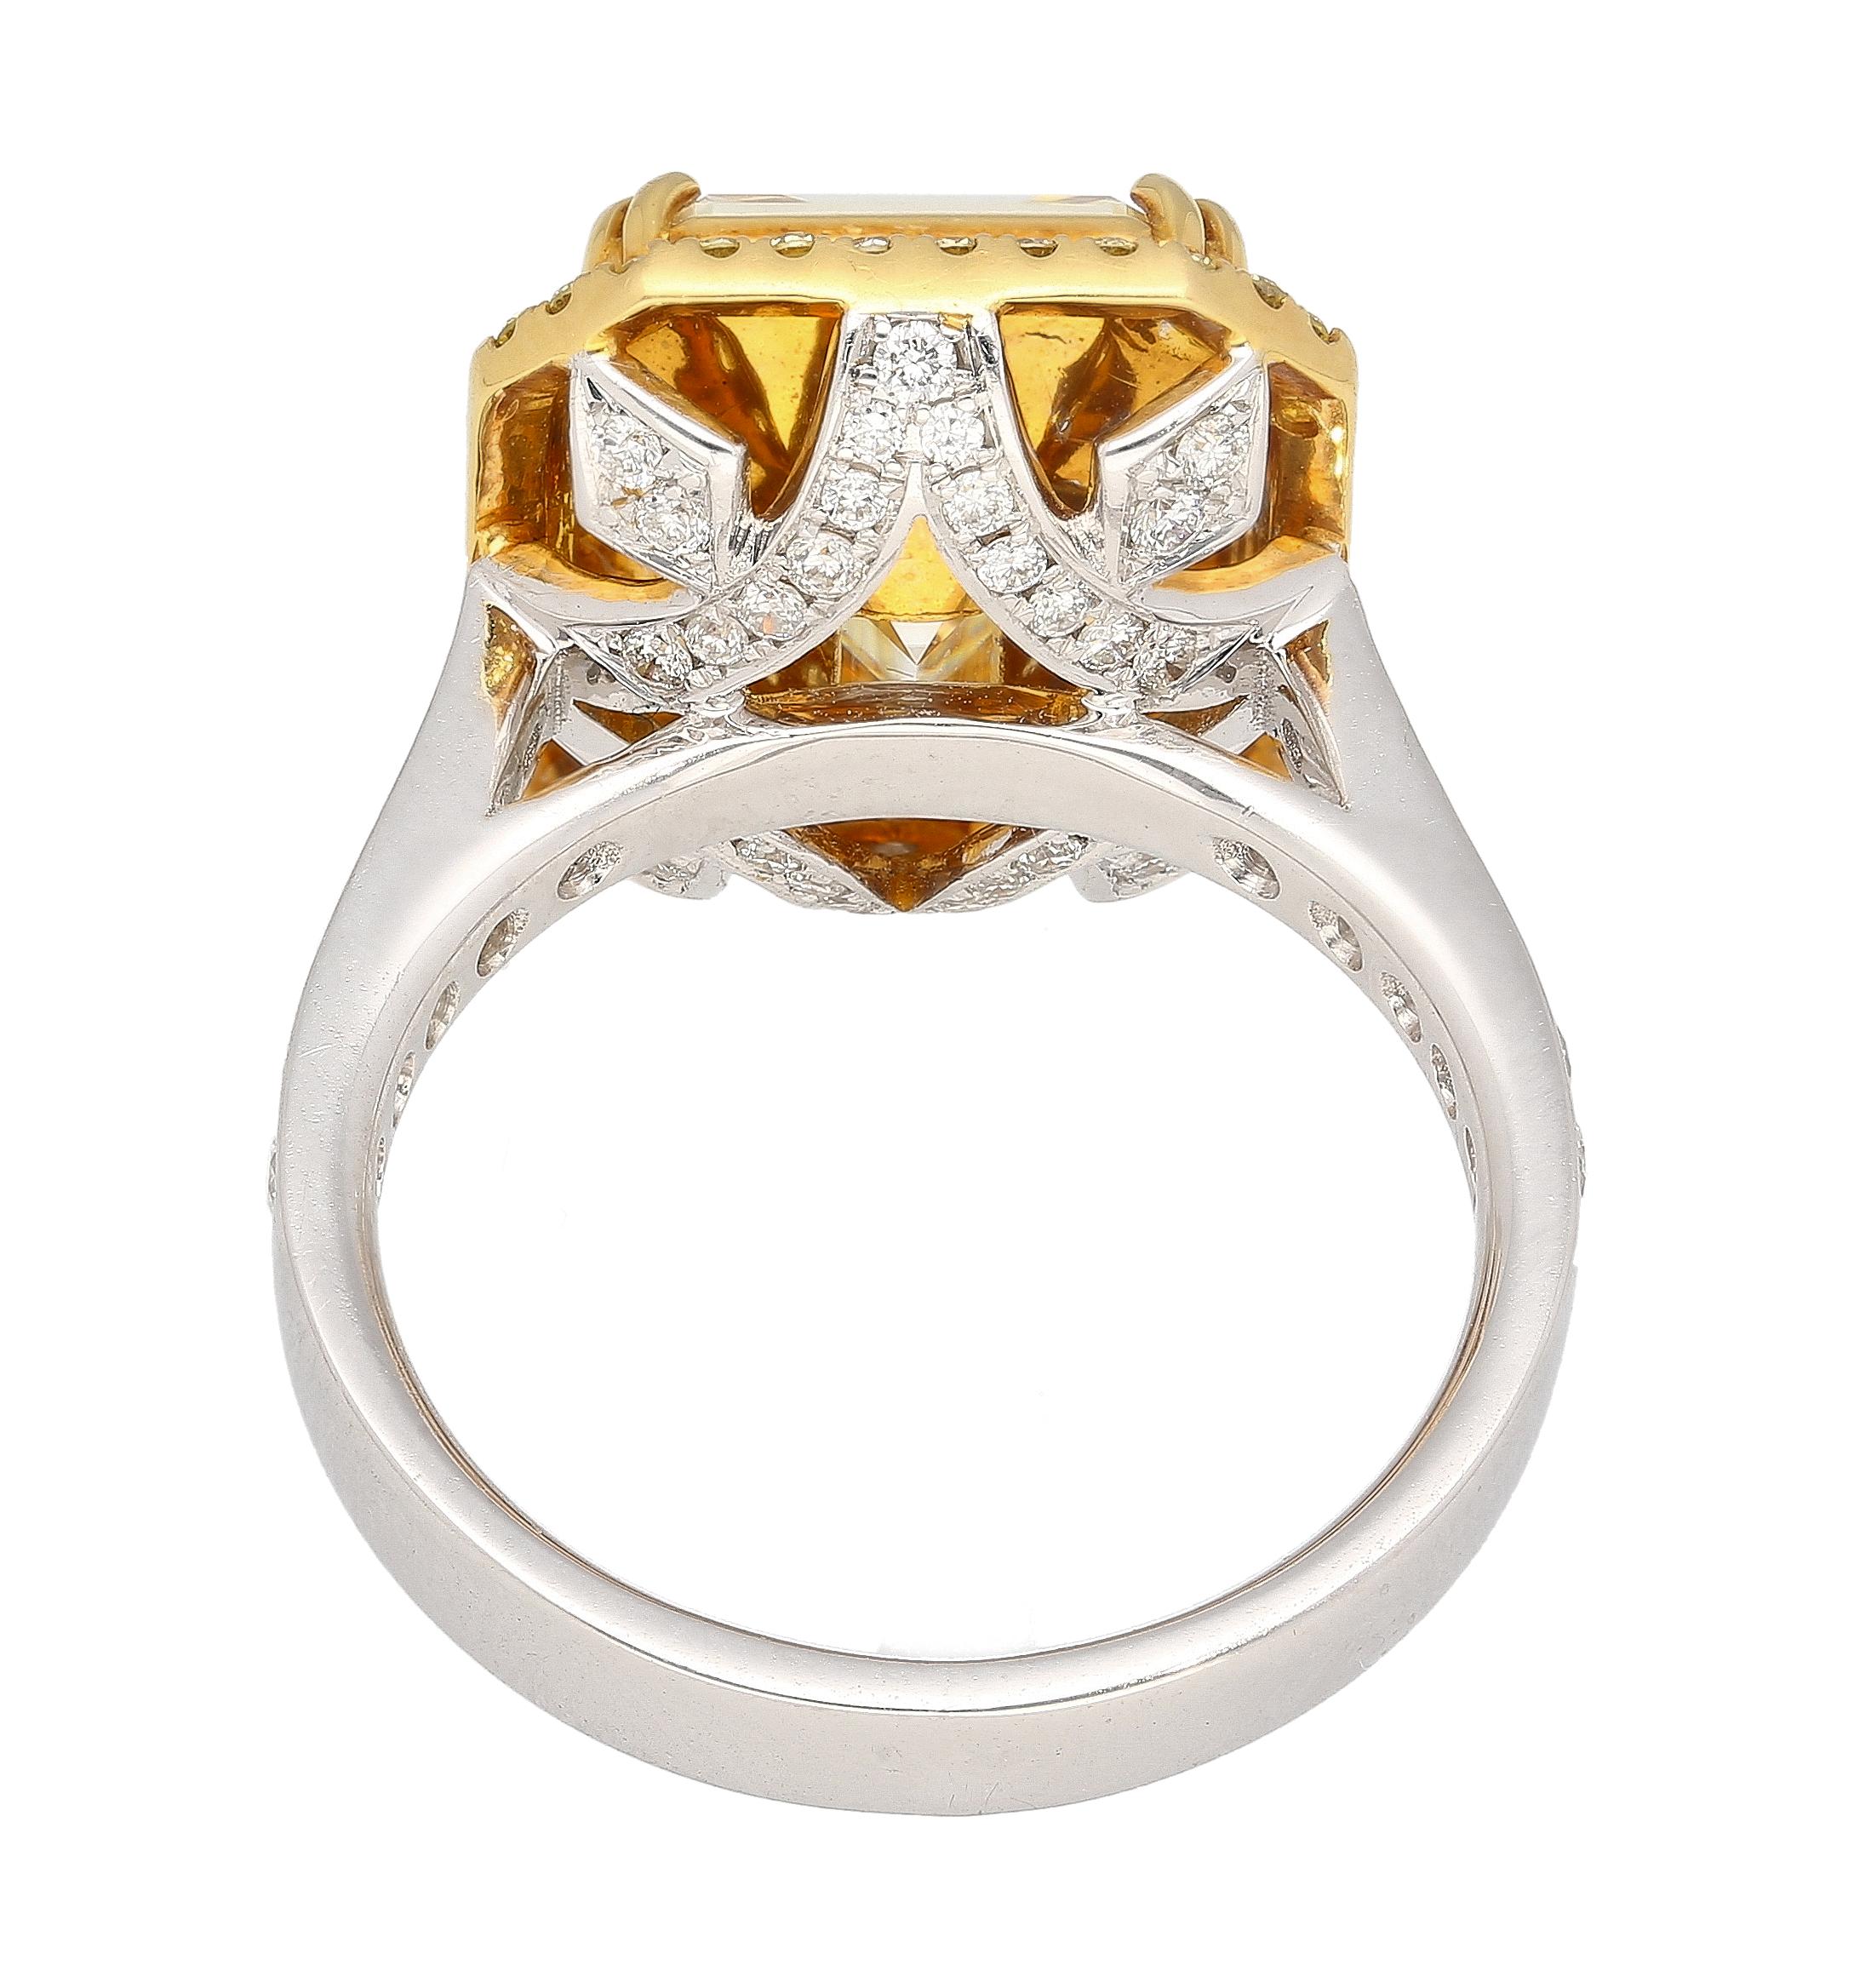 Wir stellen unseren exquisiten Ring aus 18 Karat Weiß- und Gelbgold vor, der 7,20 Gramm wiegt und in dessen Zentrum ein atemberaubender 7,25 Karat großer, hellgelber Naturdiamant im Smaragdschliff thront. Der Ring ist außerdem mit 40 Diamanten im